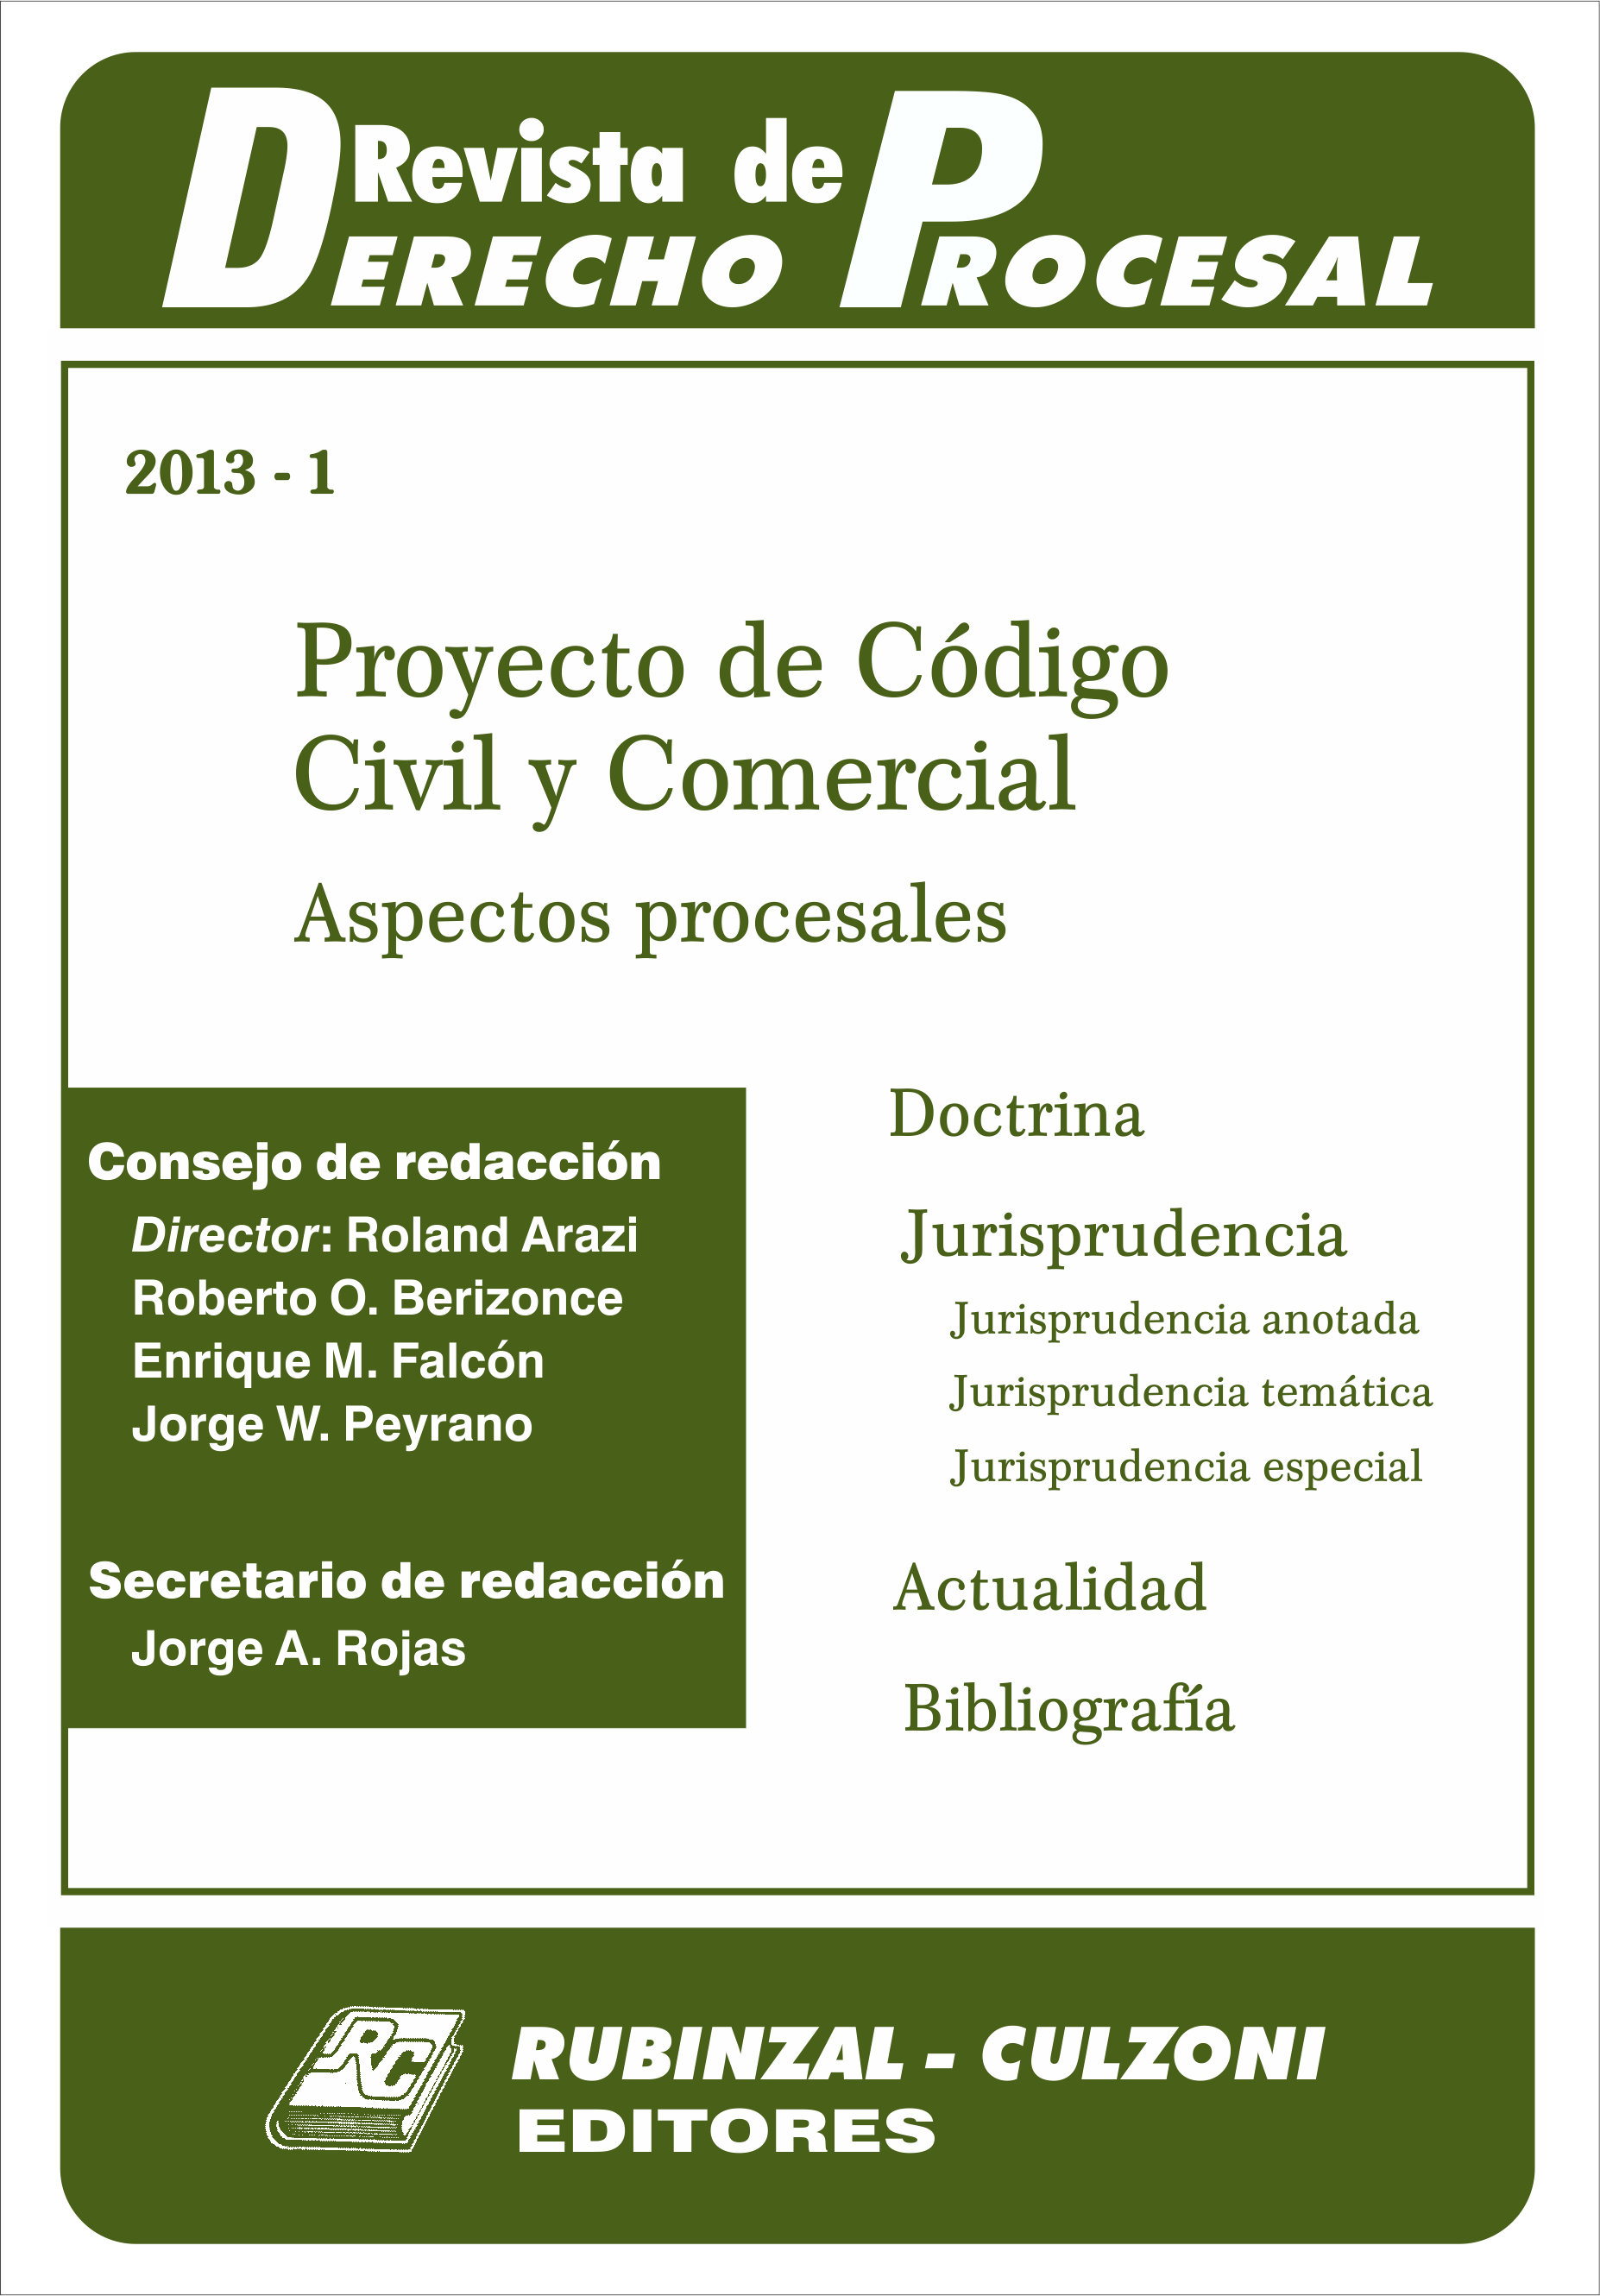 Revista de Derecho Procesal - Proyecto de Código Civil y Comercial. Aspectos procesales.